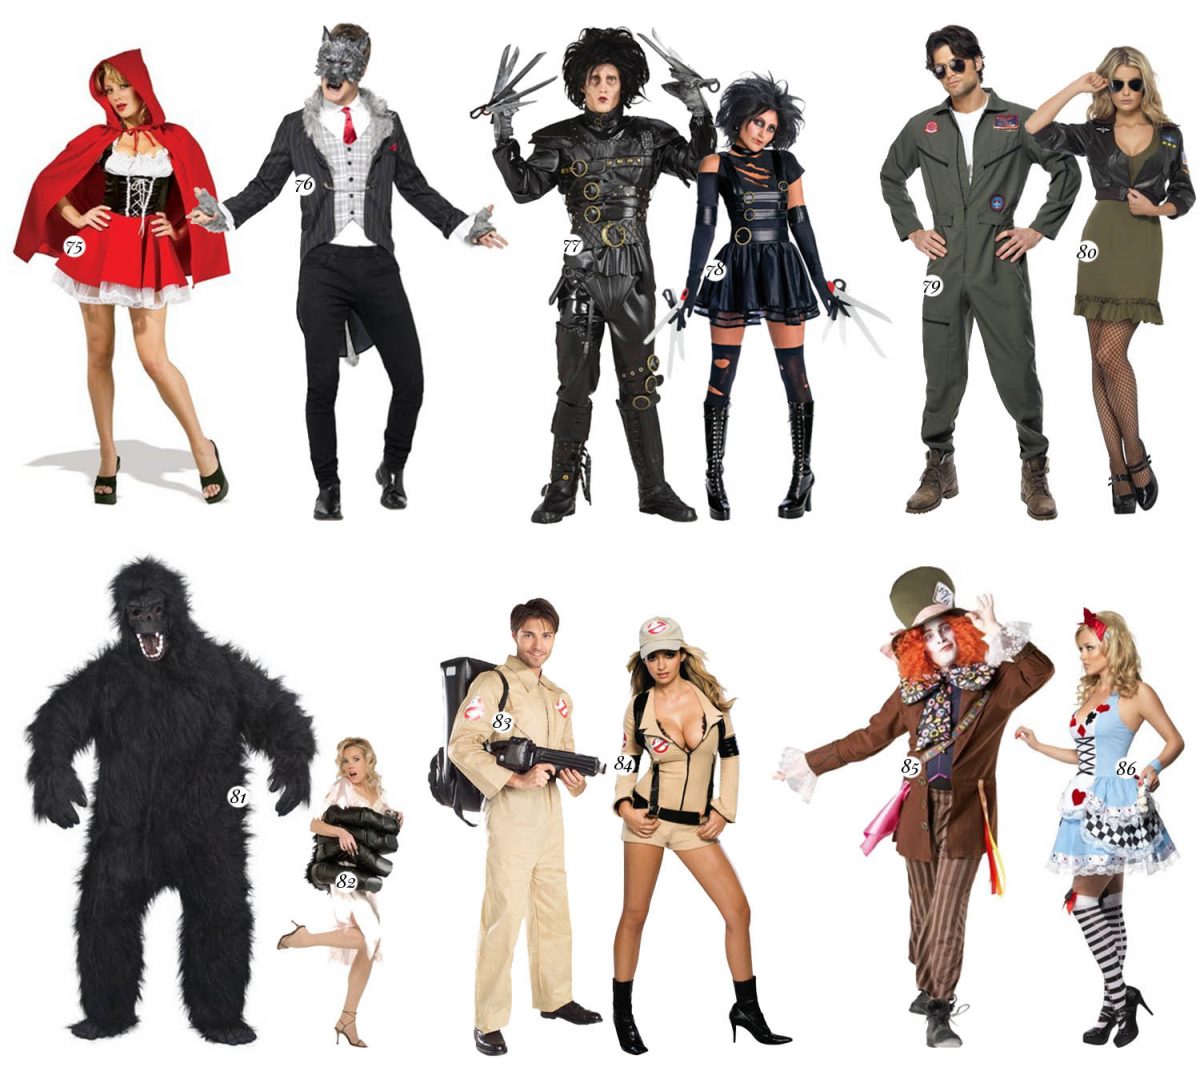 100+ Couple Costume Ideas: The Ultimate Halloween Guide • ADARAS Blogazine